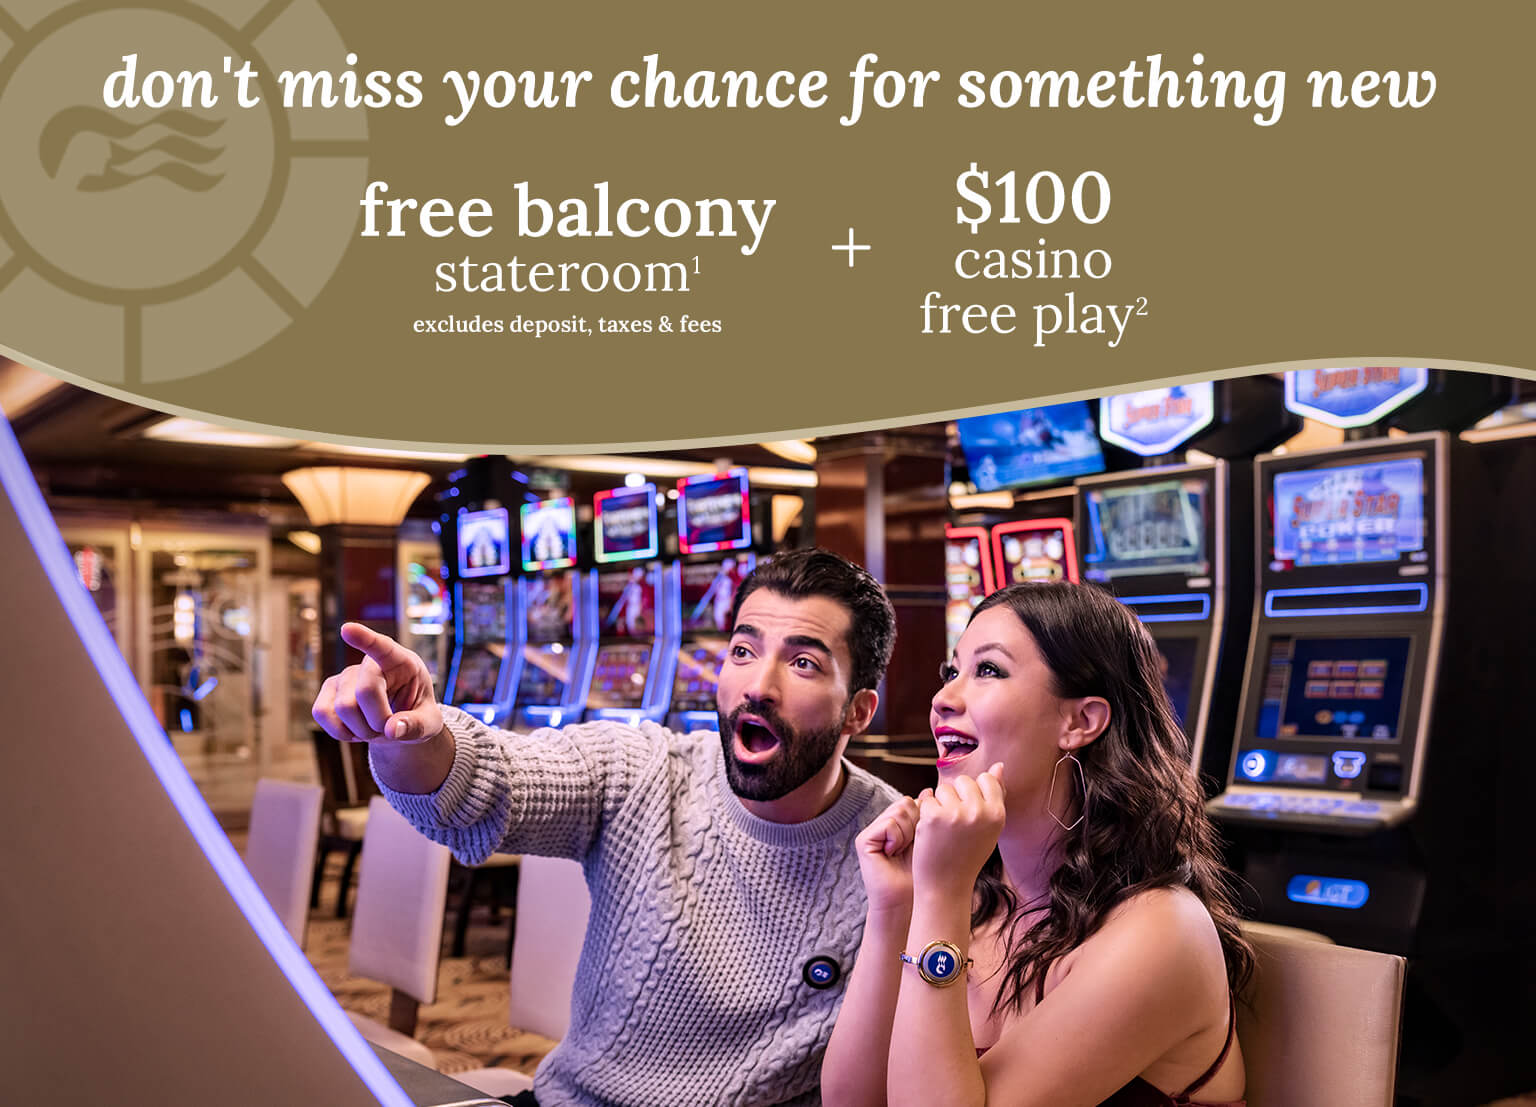 free balcony stateroom + $100 casino free play